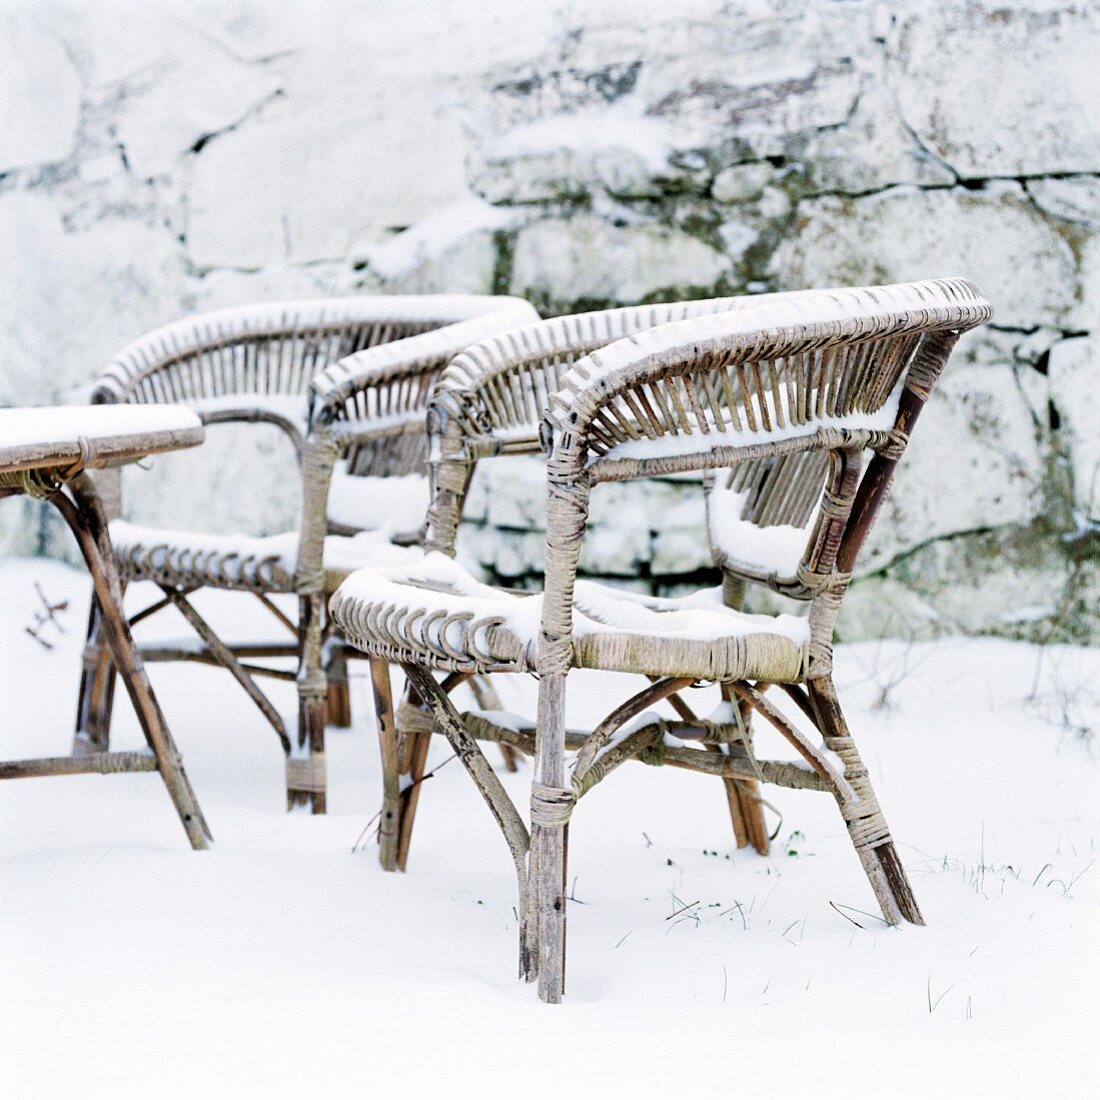 Wicker chairs in snowy garden